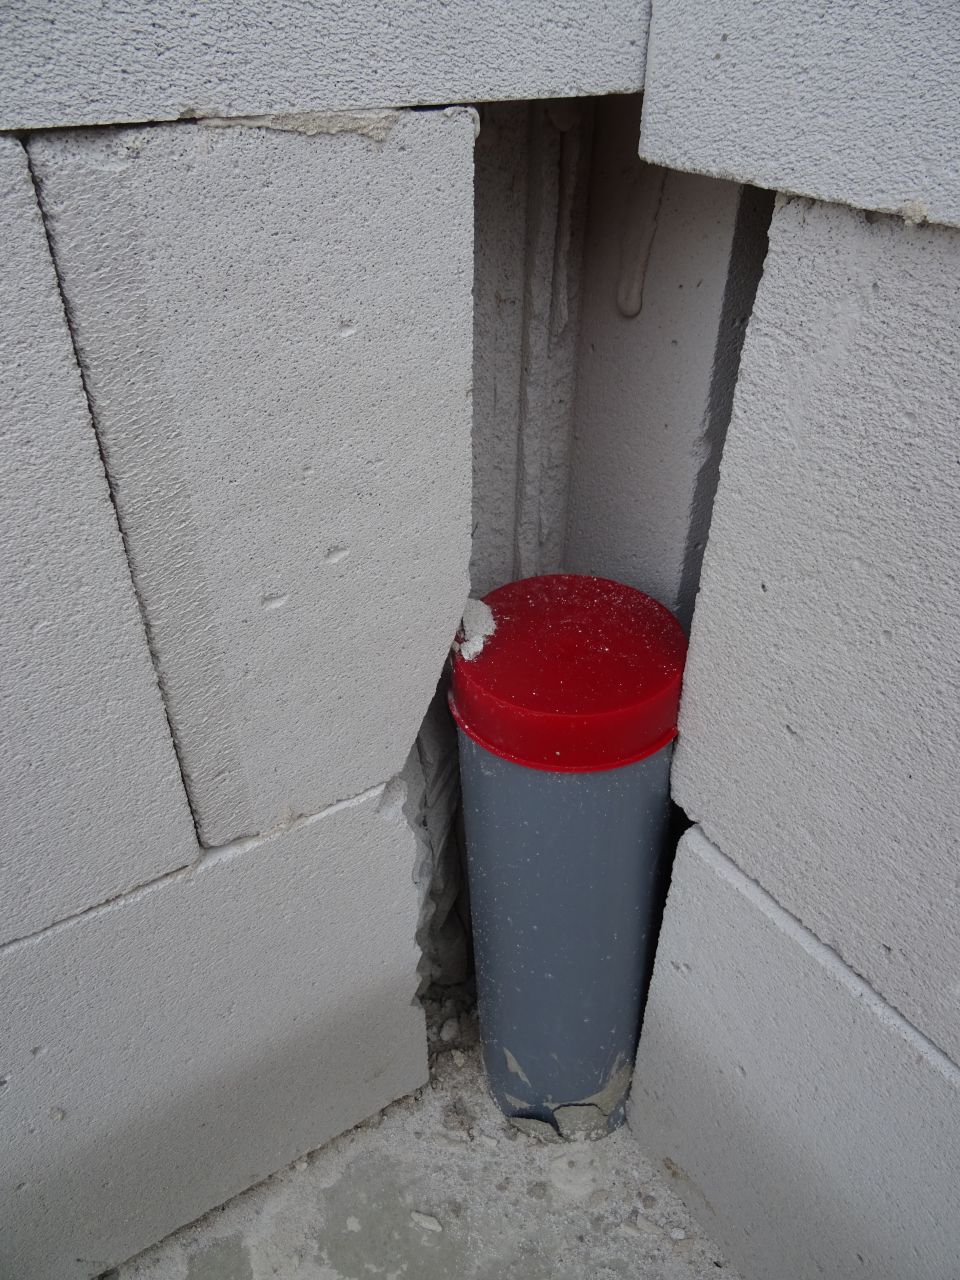 Briques massacres cette fois le tuyau est bien encastr dans le mur, pas le choix, mais pourquoi si haut ? (les briques  droite ne font pas partie du mur)